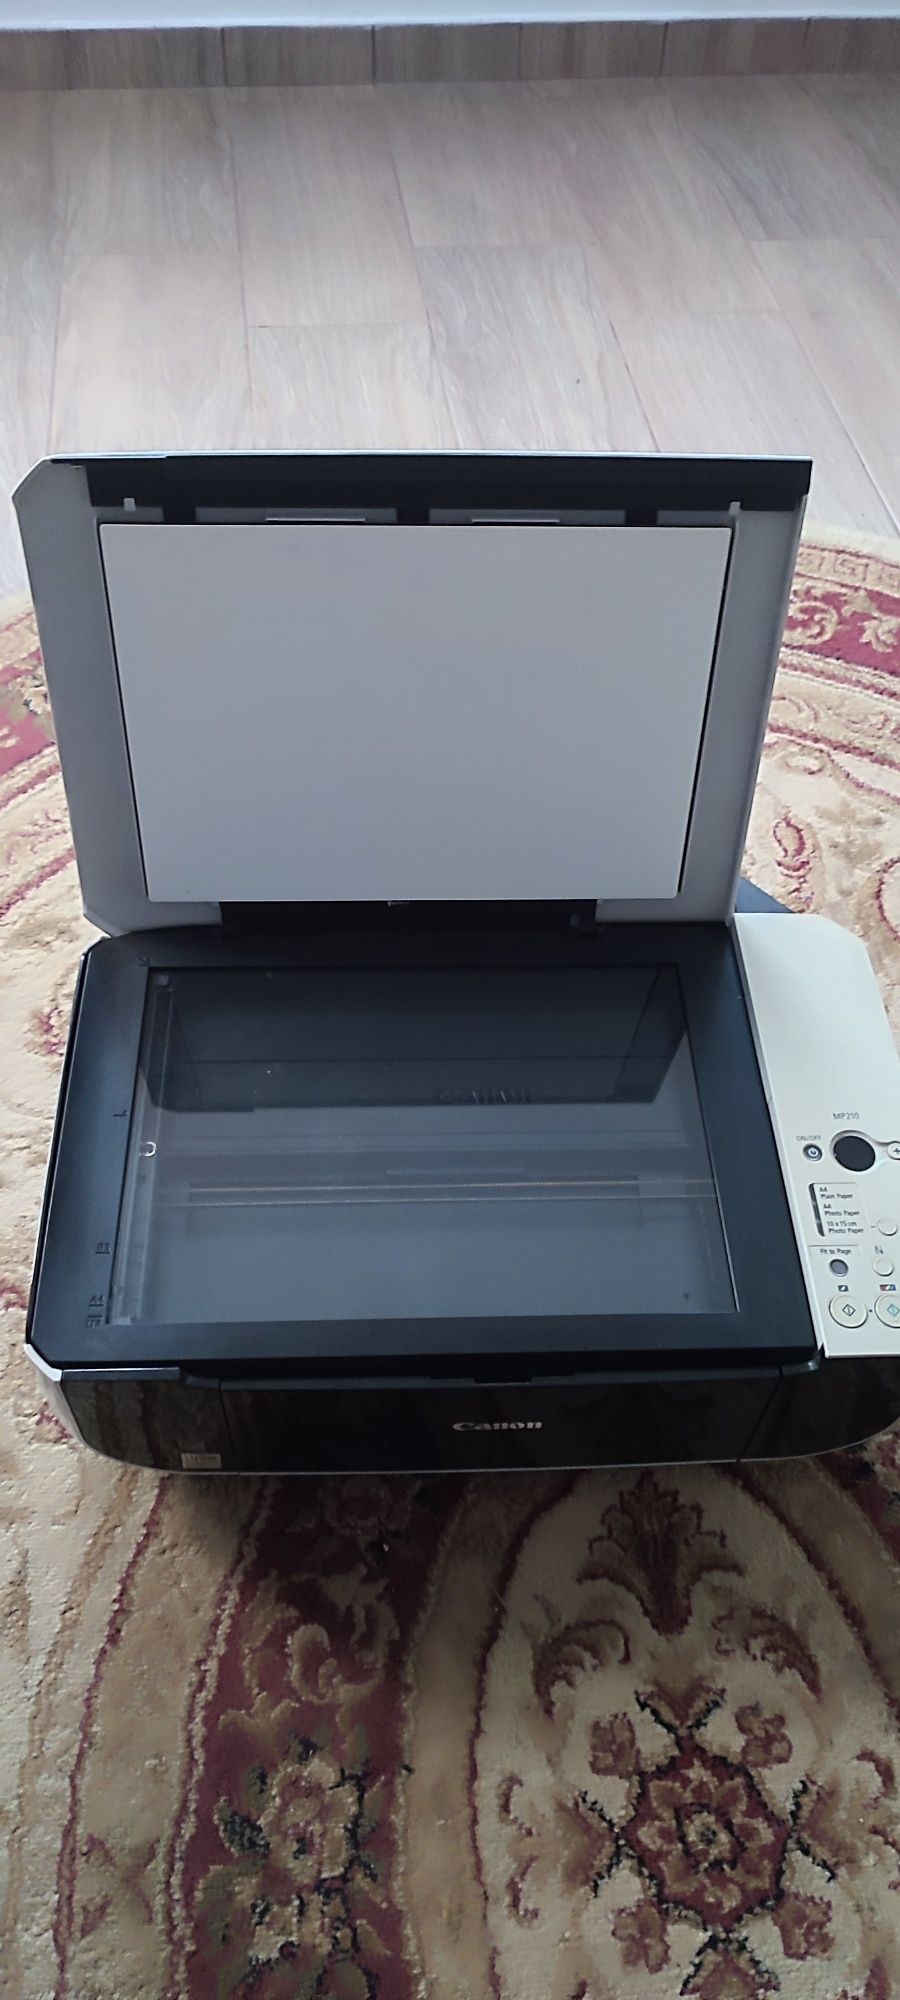 Vând, Imprimanta CANON, cu scaner, pe port USB